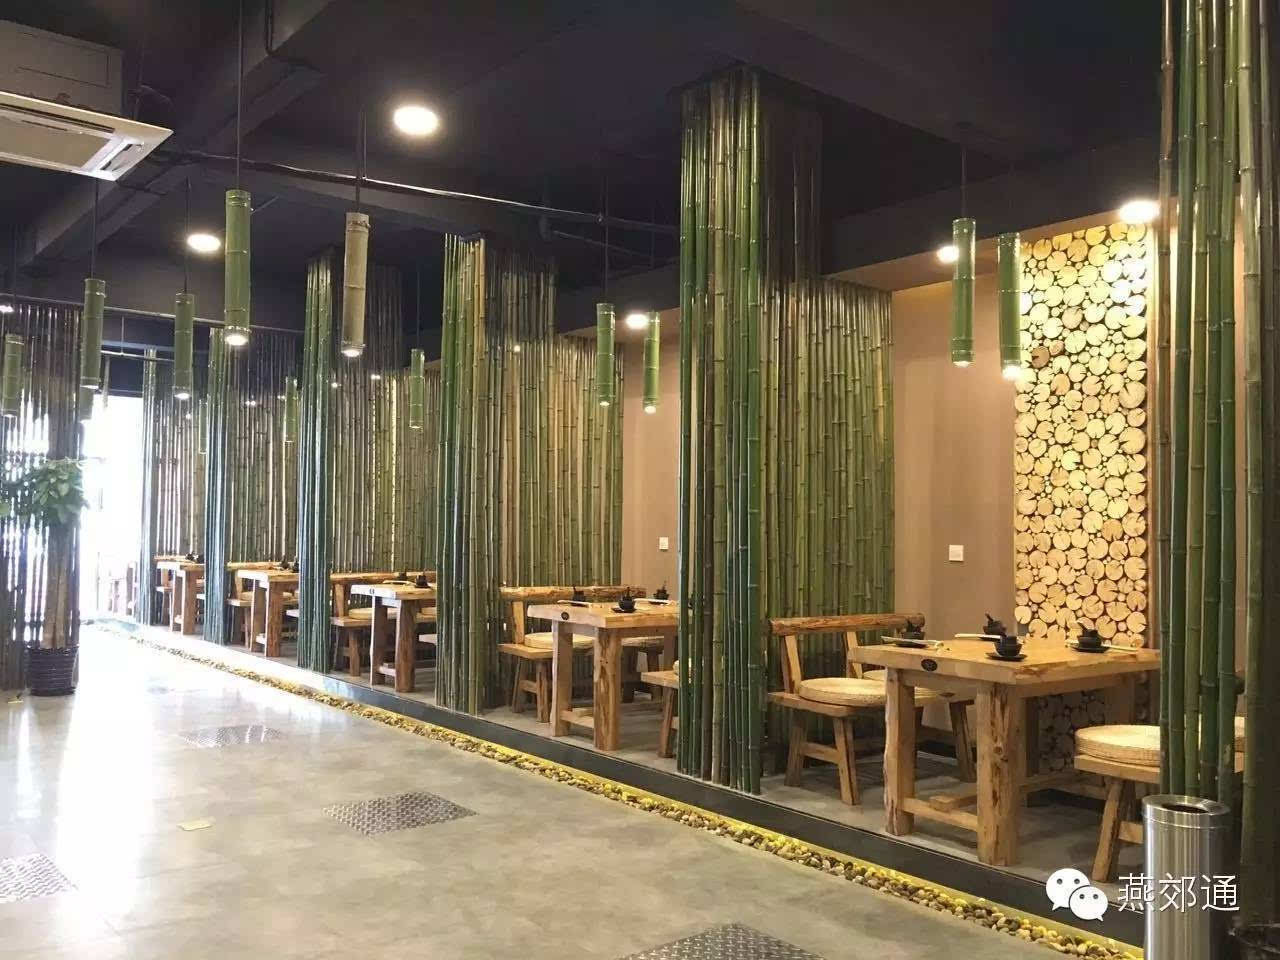 燕郊美食:这家餐厅竟然全是用竹子做的